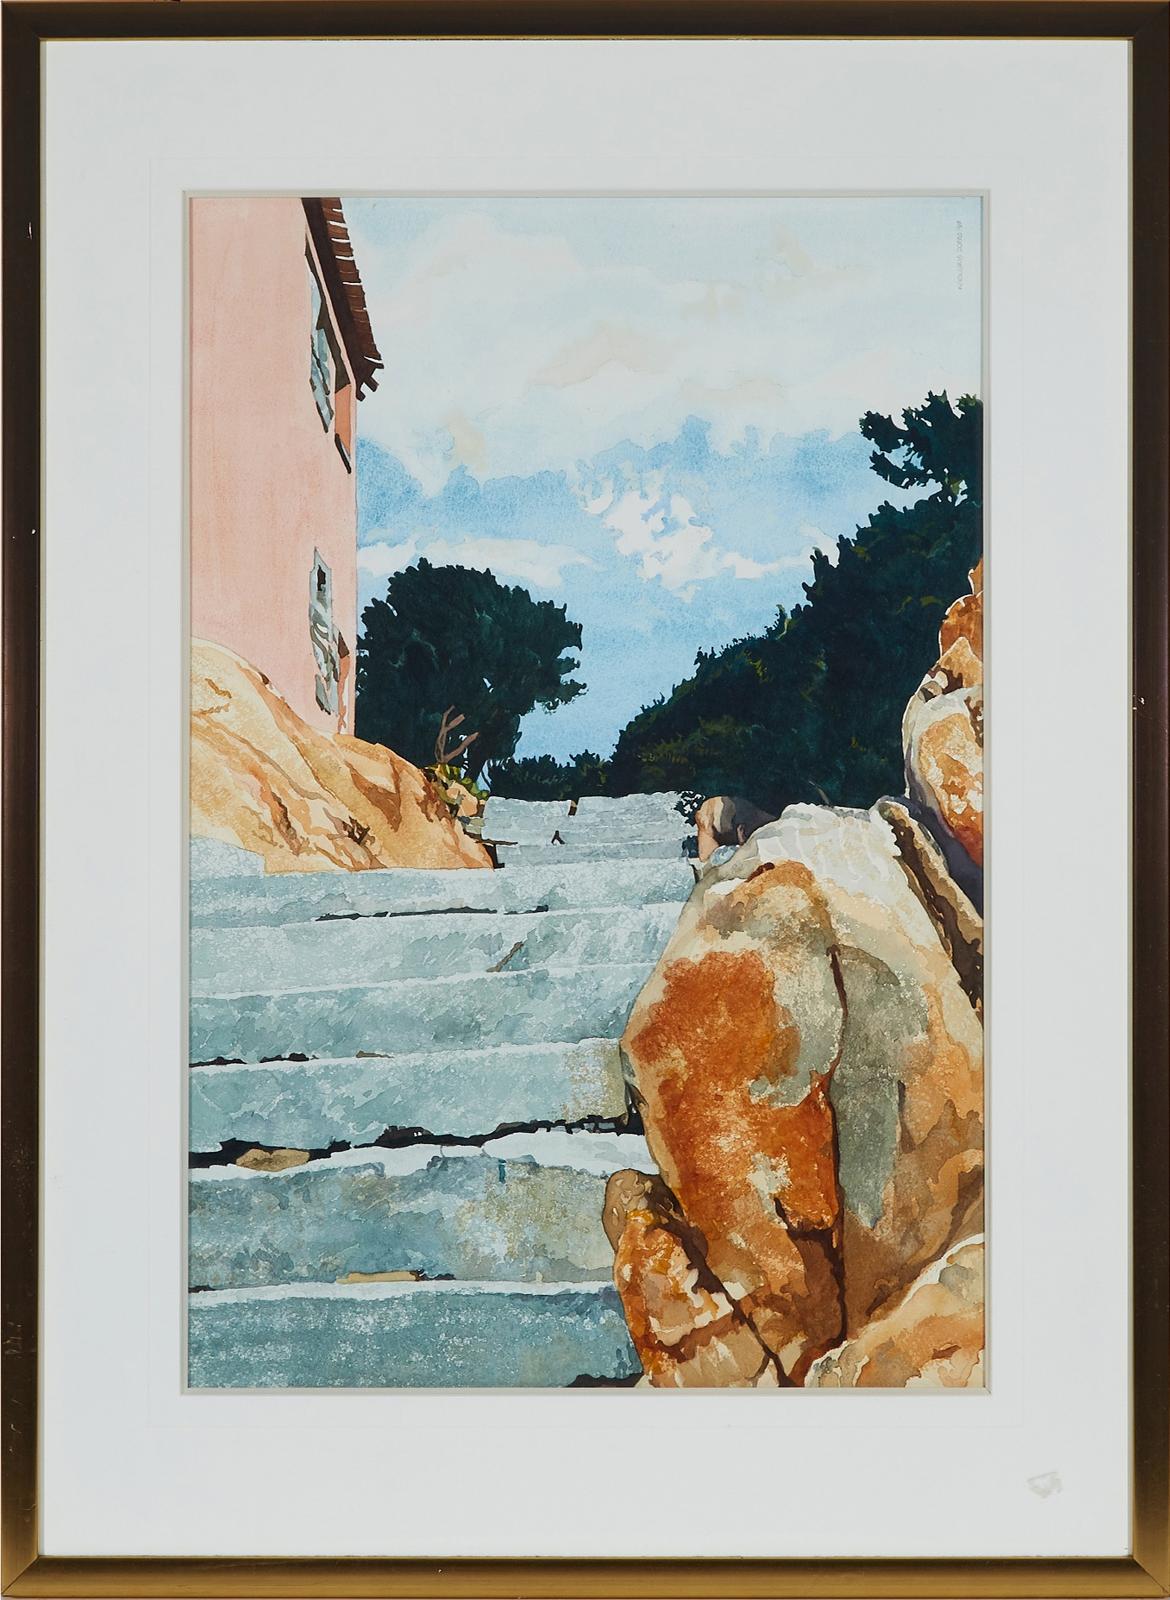 Linda Kooluris Dobbs (1949) - Untitled (Stone Steps)